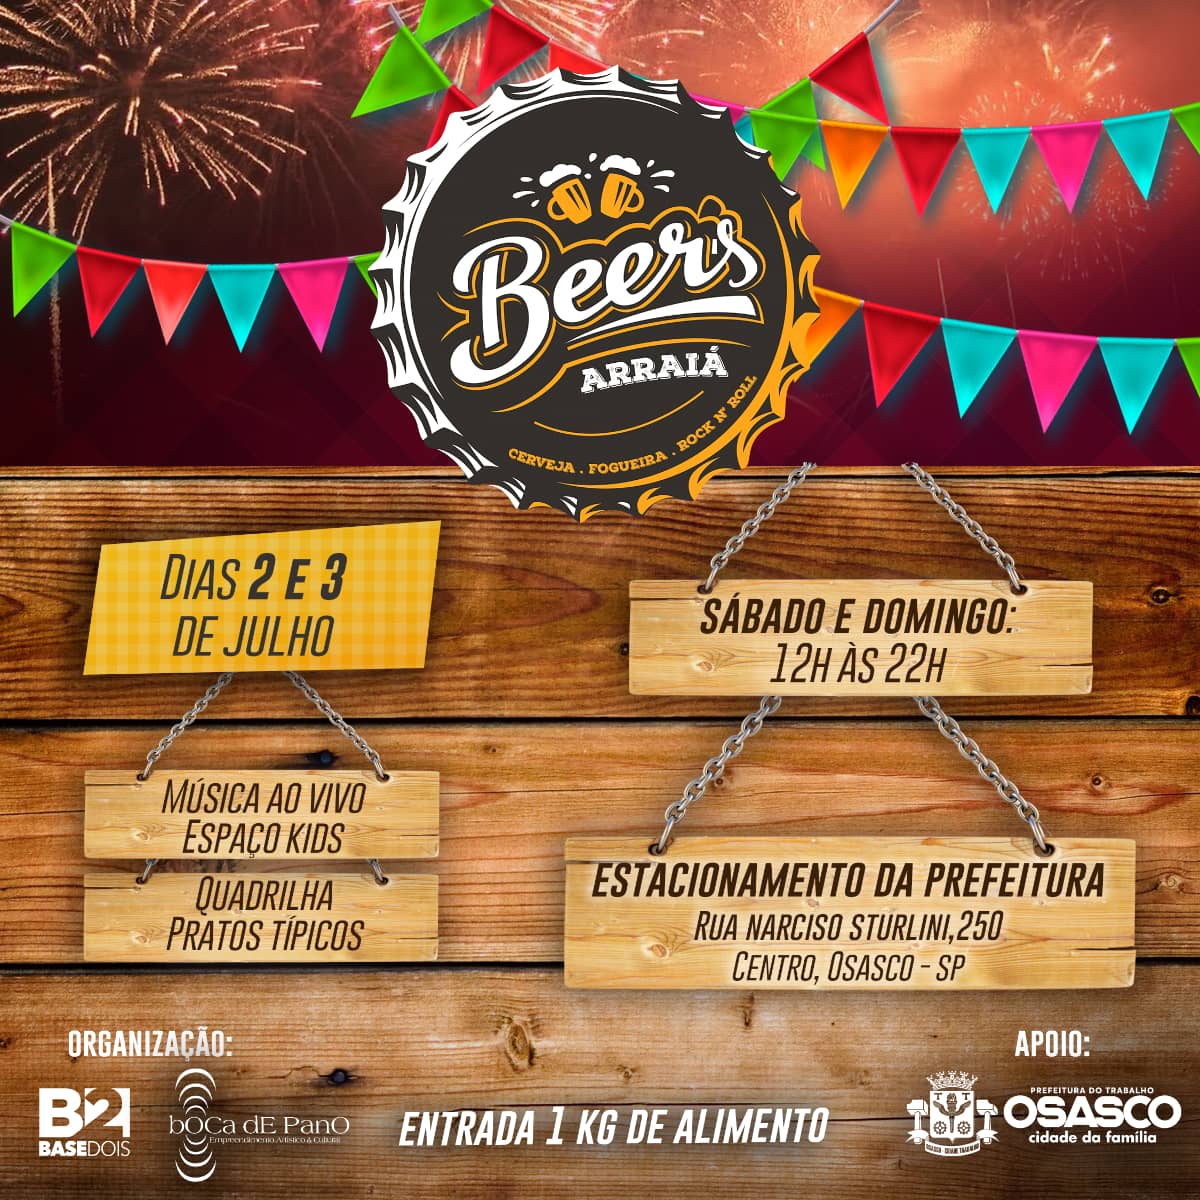 festival beers arraiá osasco (1)